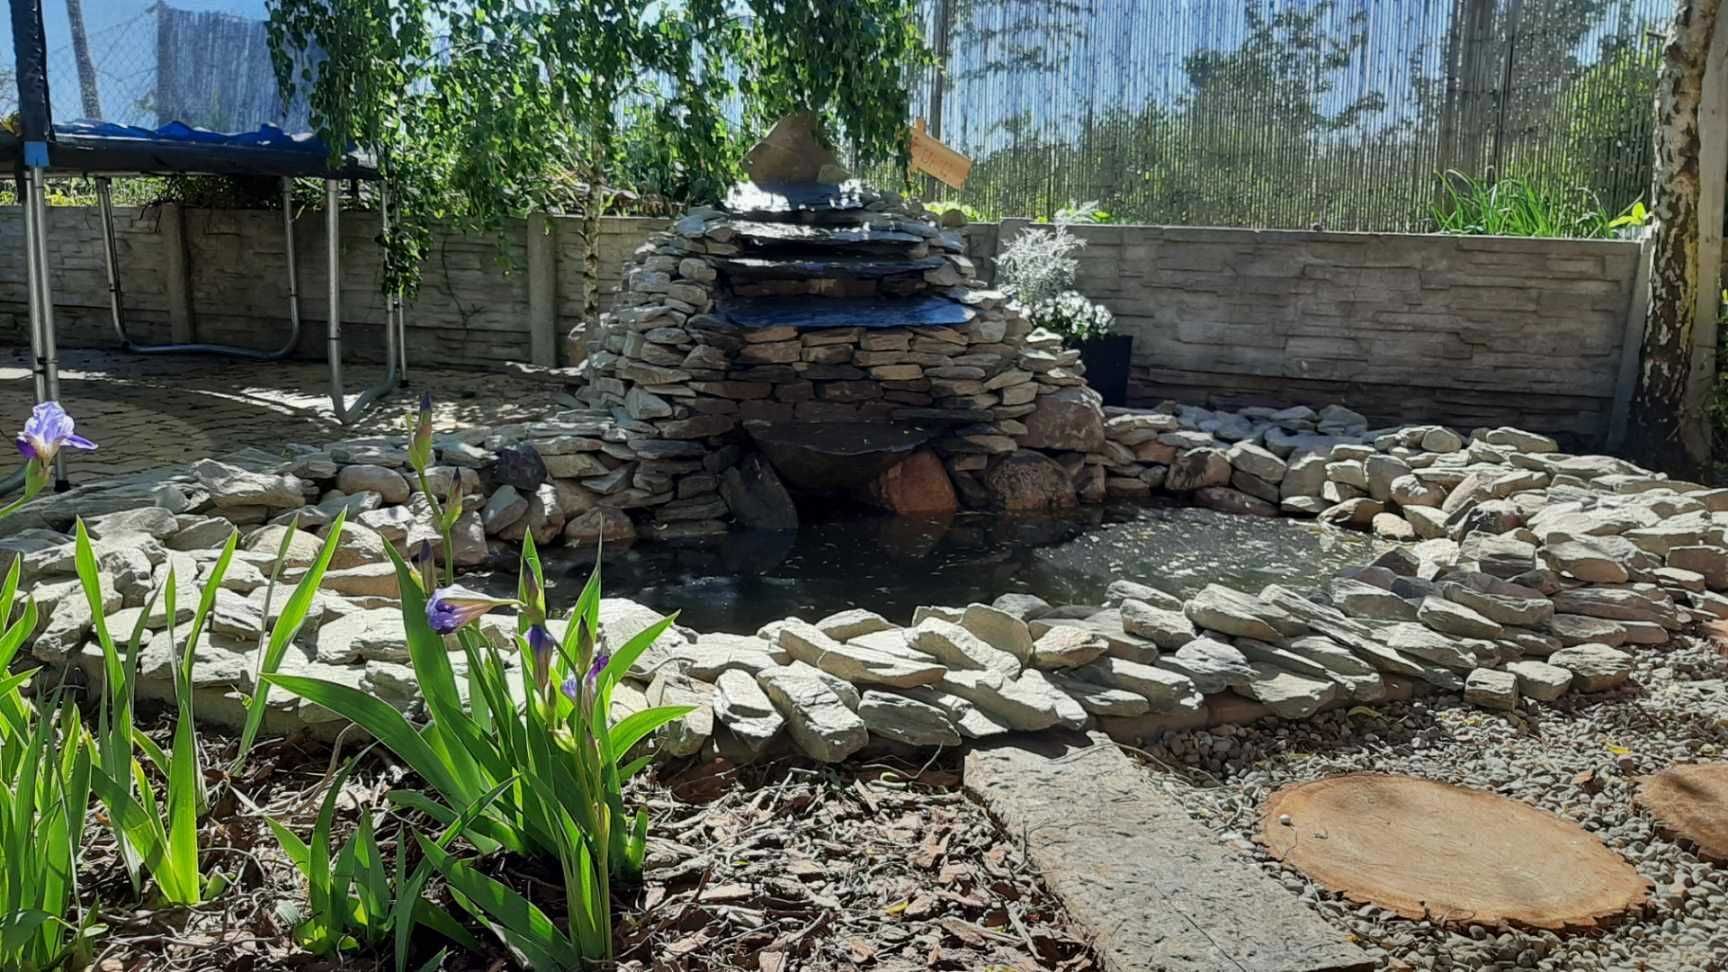 Kamień ogrodowy łupek szarogłazowy